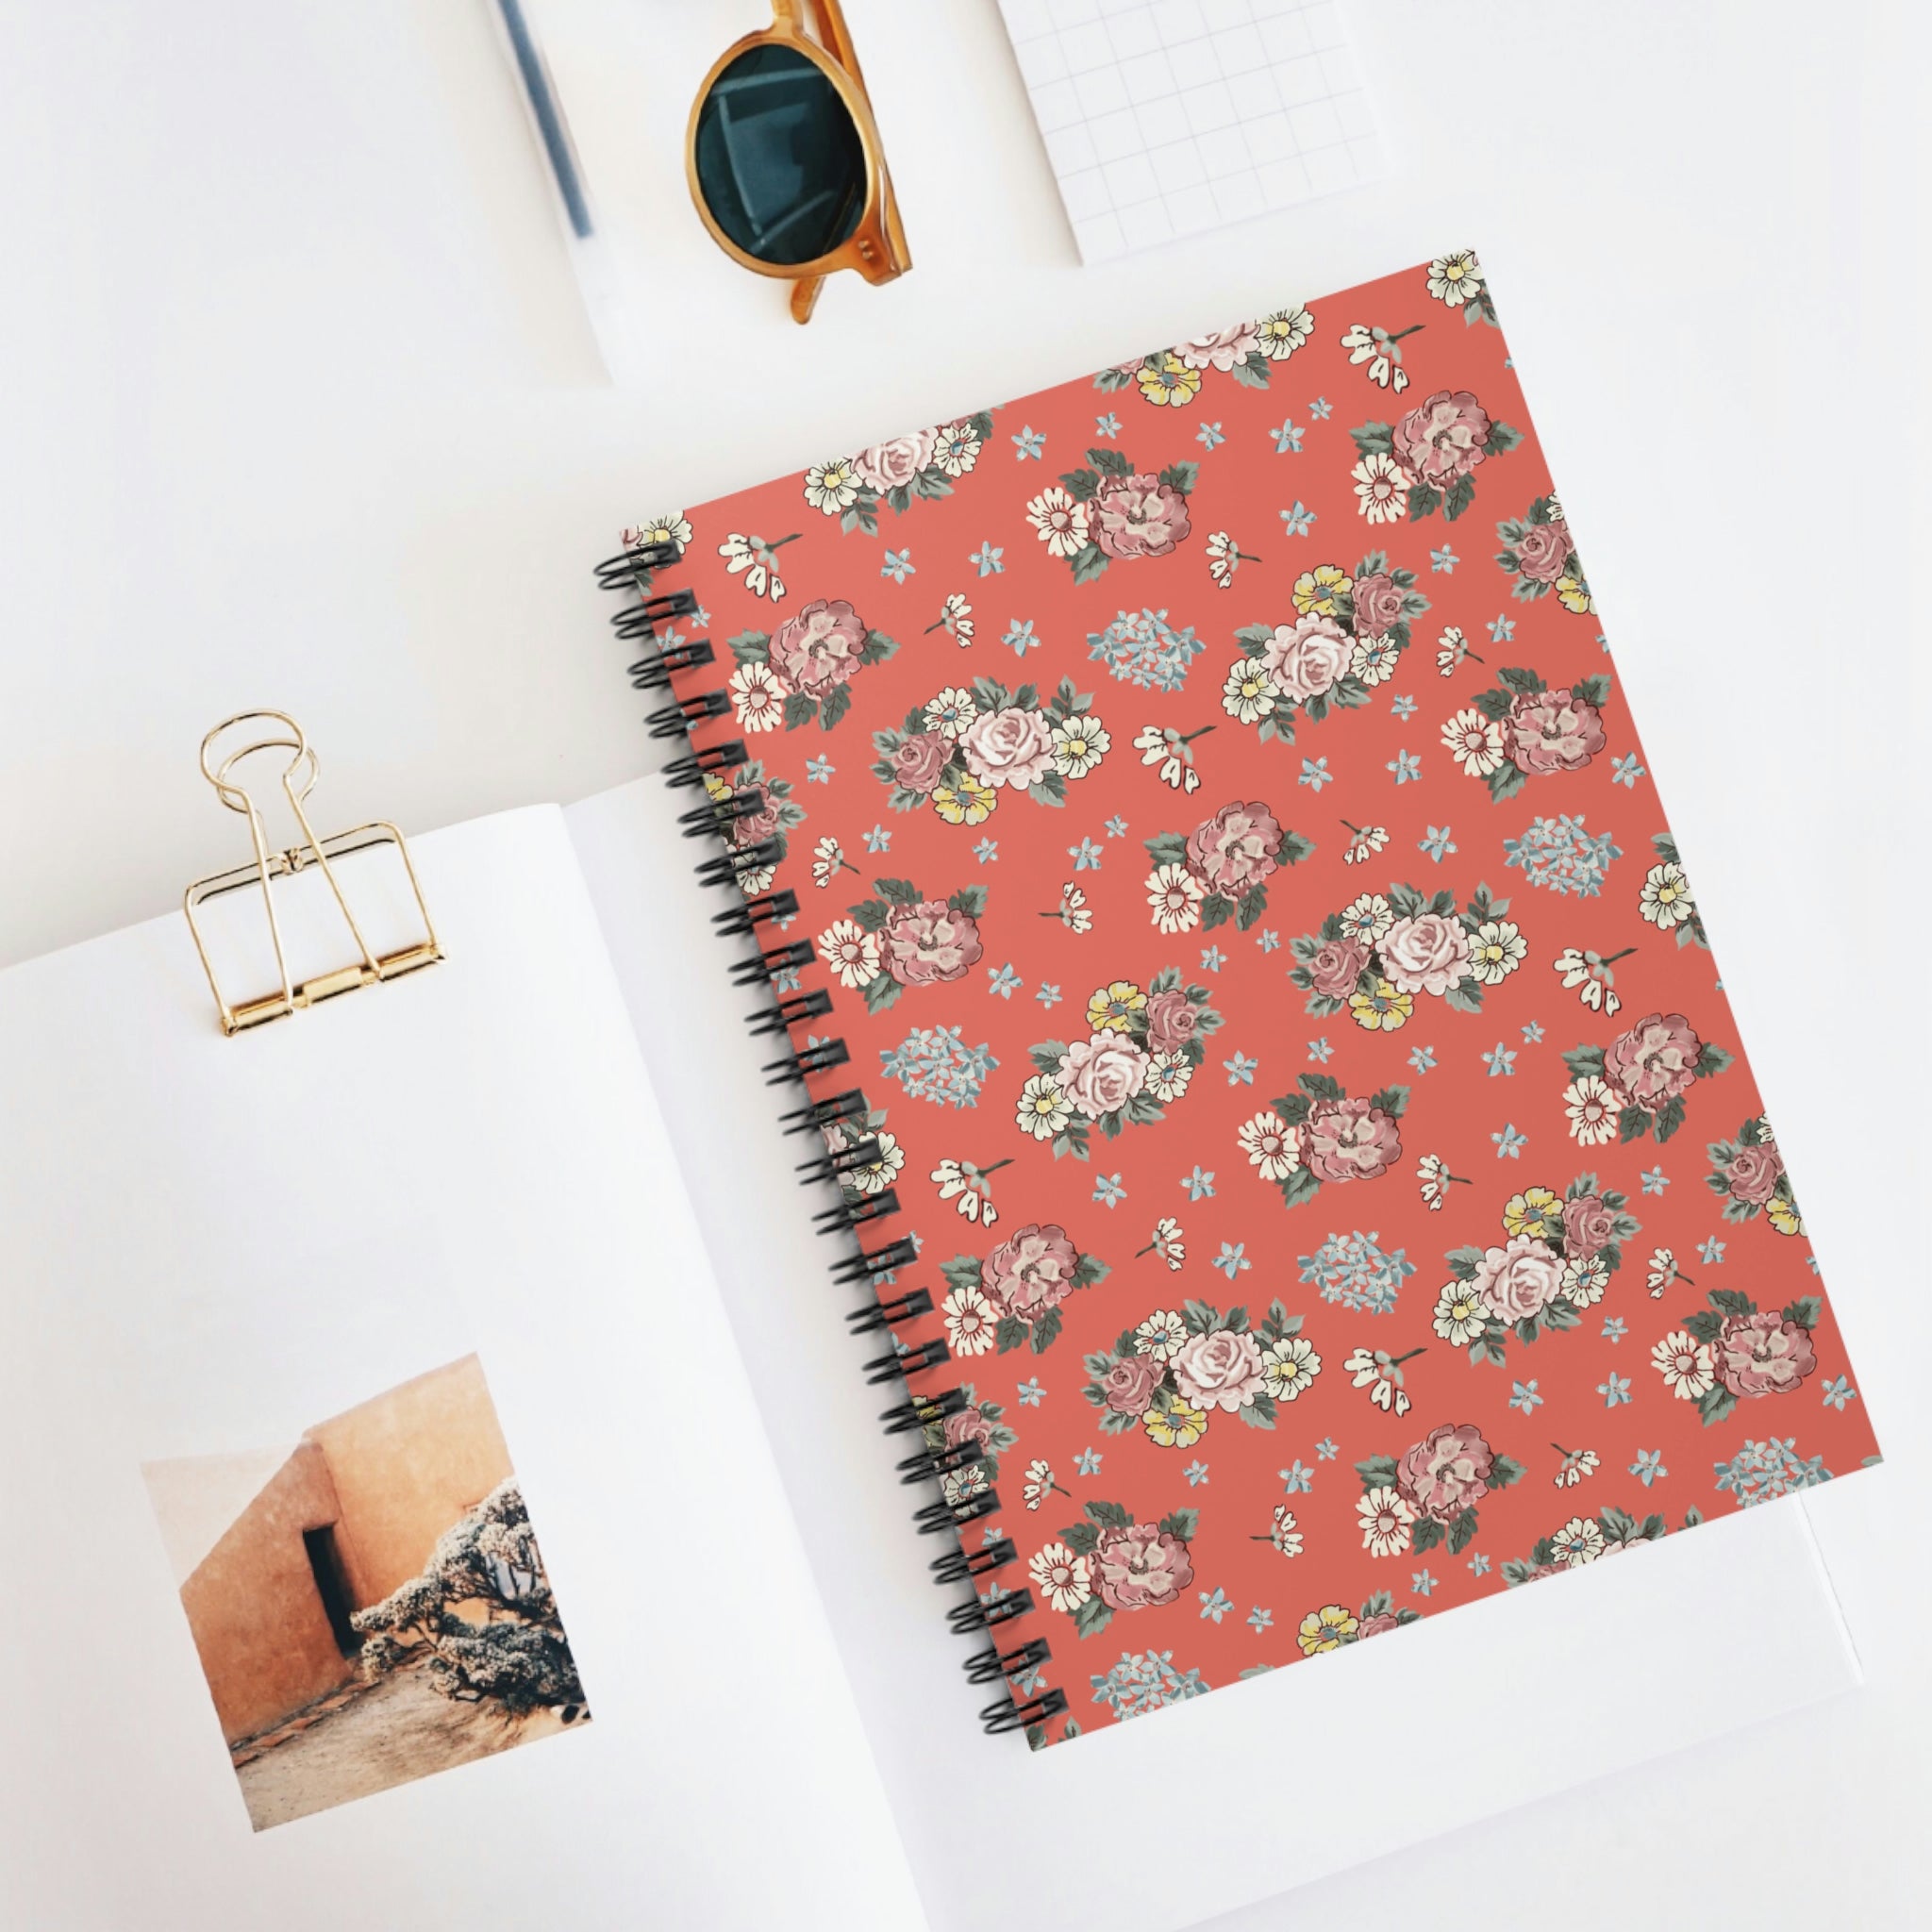 Spiral Notebook - Ruled Line / orange floral